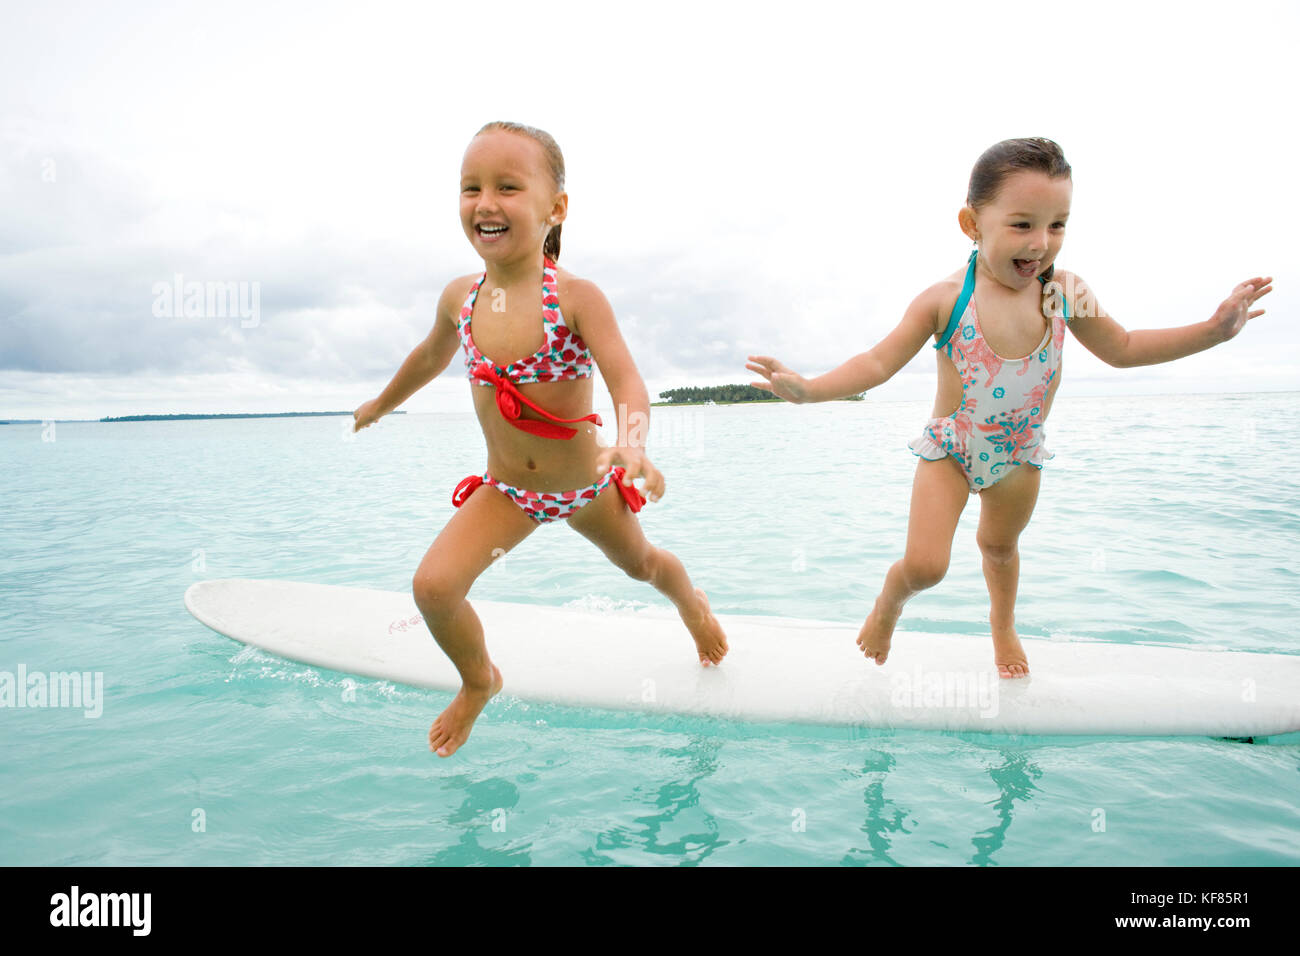 Indonesien, Mentawai Inseln, kandui Resort, Mädchen, Springen von einem Surfbrett in den Indischen Ozean Stockfoto